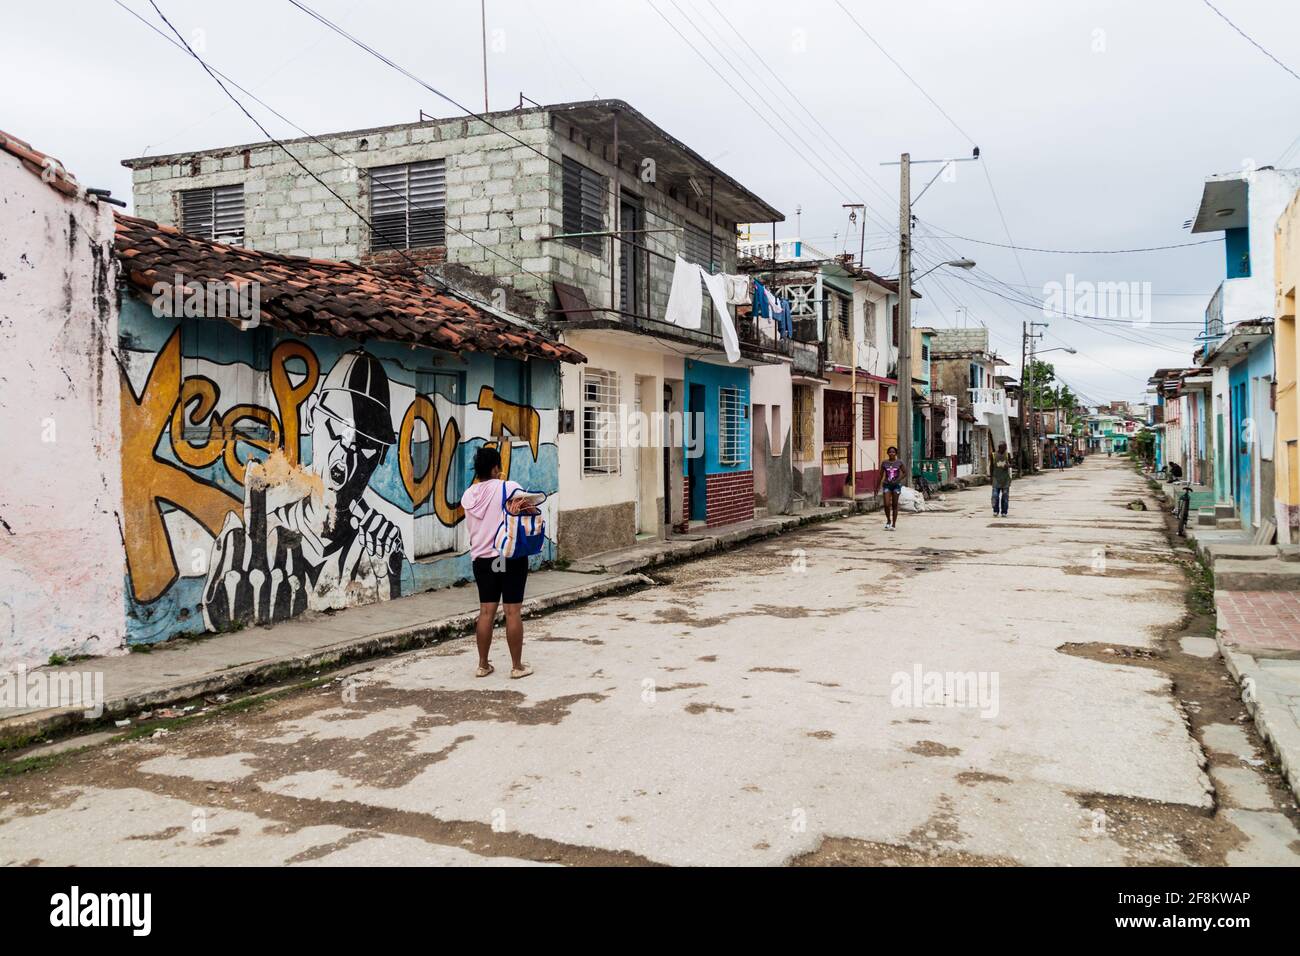 SANCTI SPIRITUS, CUBA - 7 FÉVRIER 2016 : rue avec maisons colorées à Sancti Spiritus, Cuba Banque D'Images